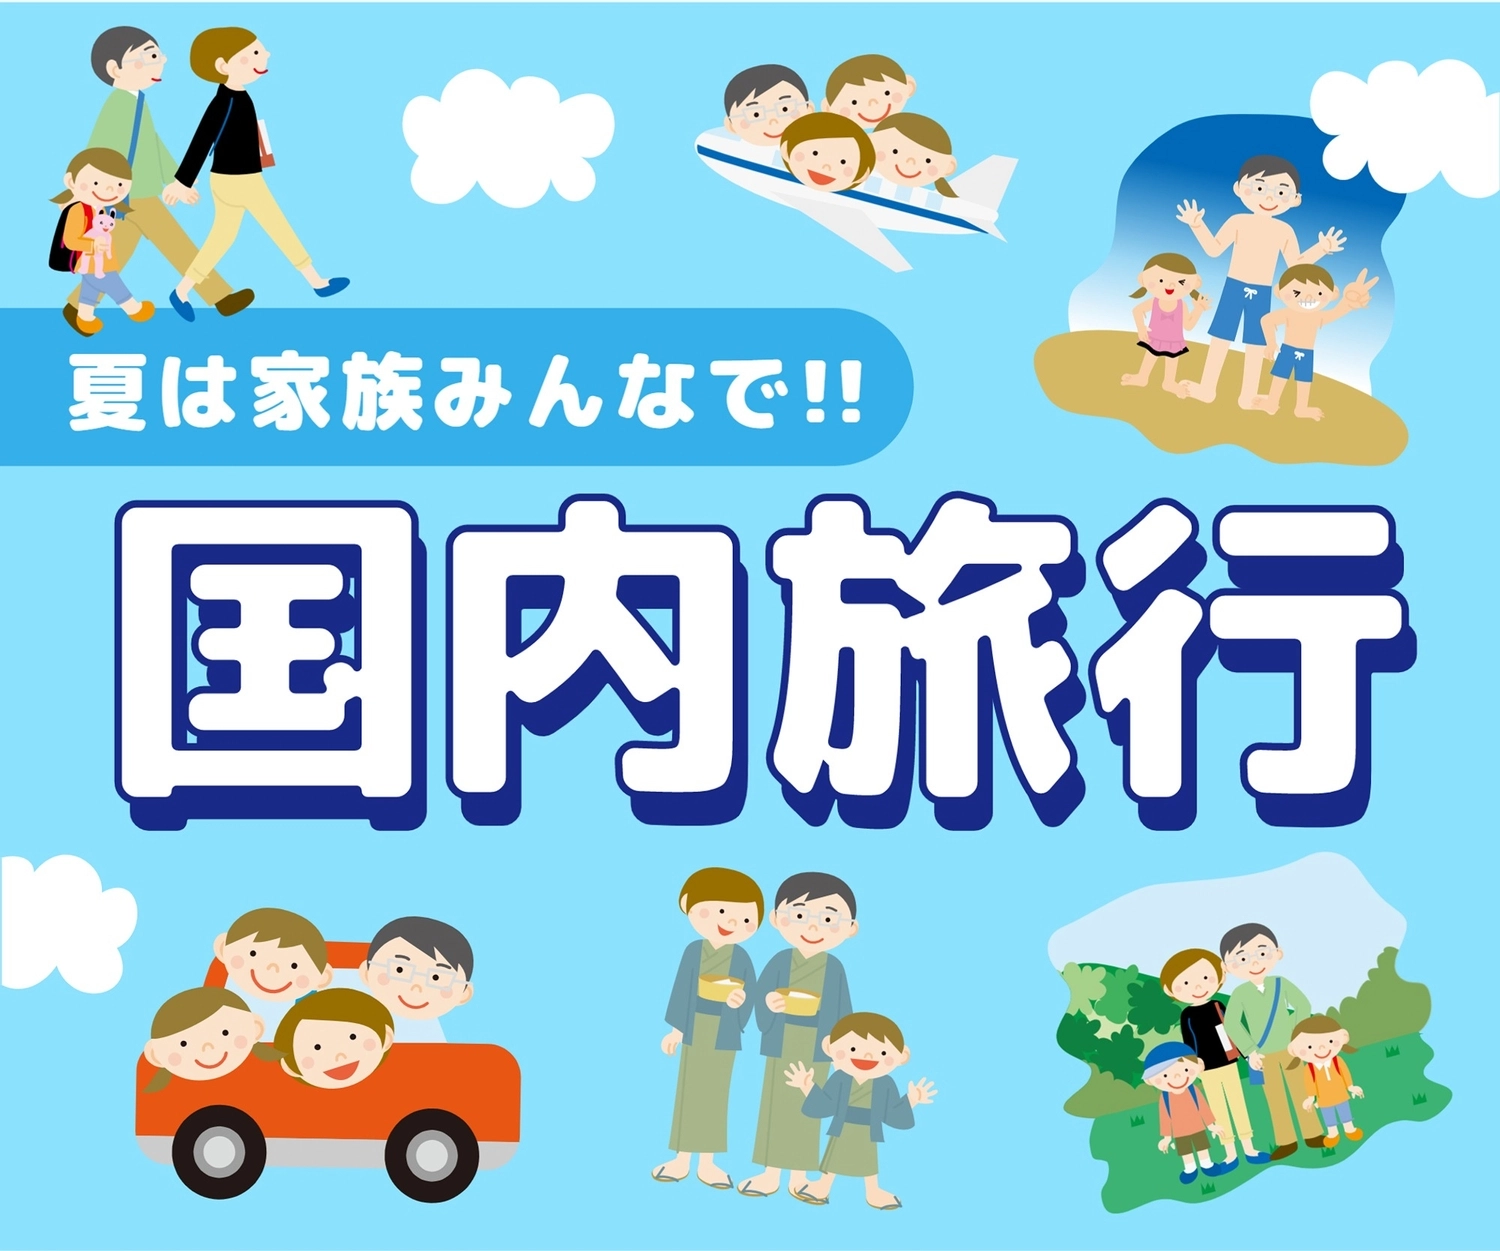 国内旅行のバナー, travel agency, banner, advertisement, Banner template